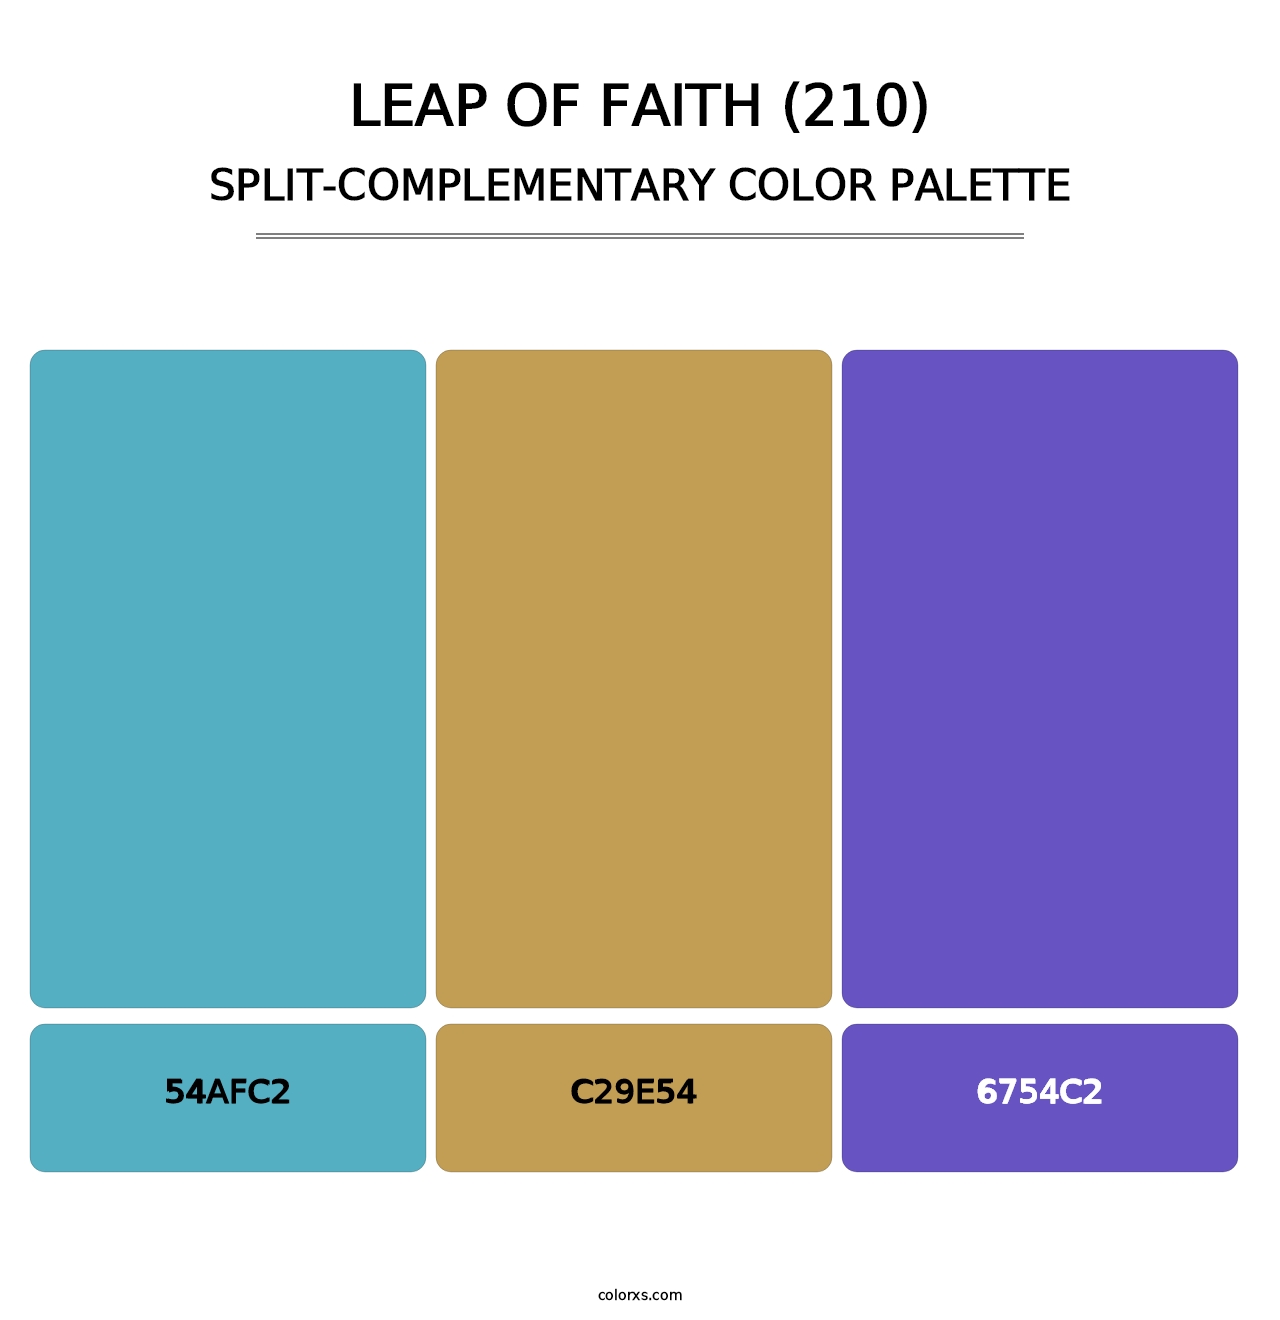 Leap of Faith (210) - Split-Complementary Color Palette